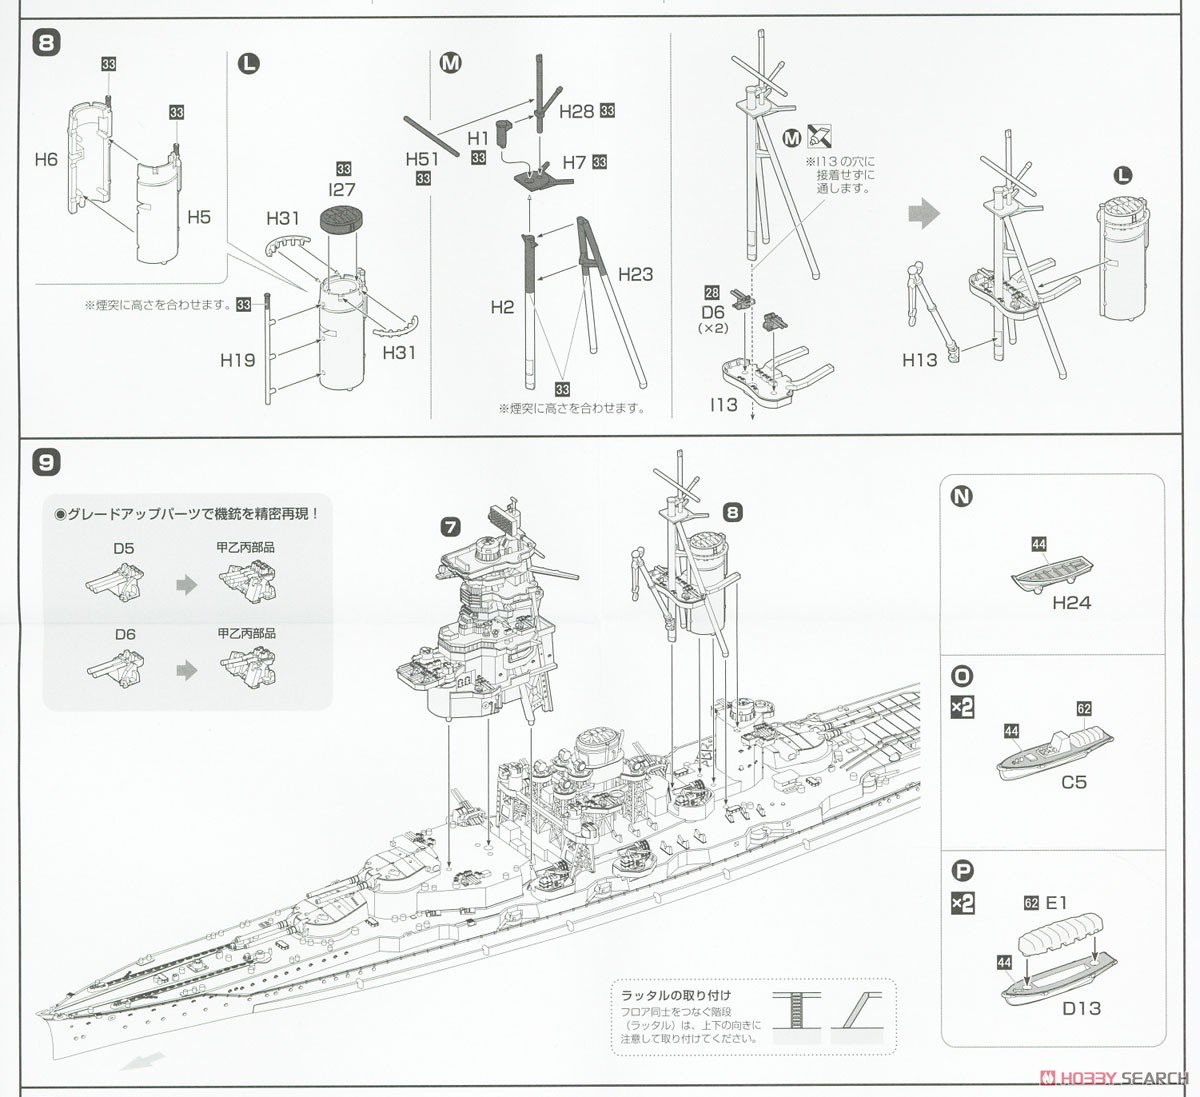 高速戦艦 榛名 フルハルモデル (プラモデル) 設計図5